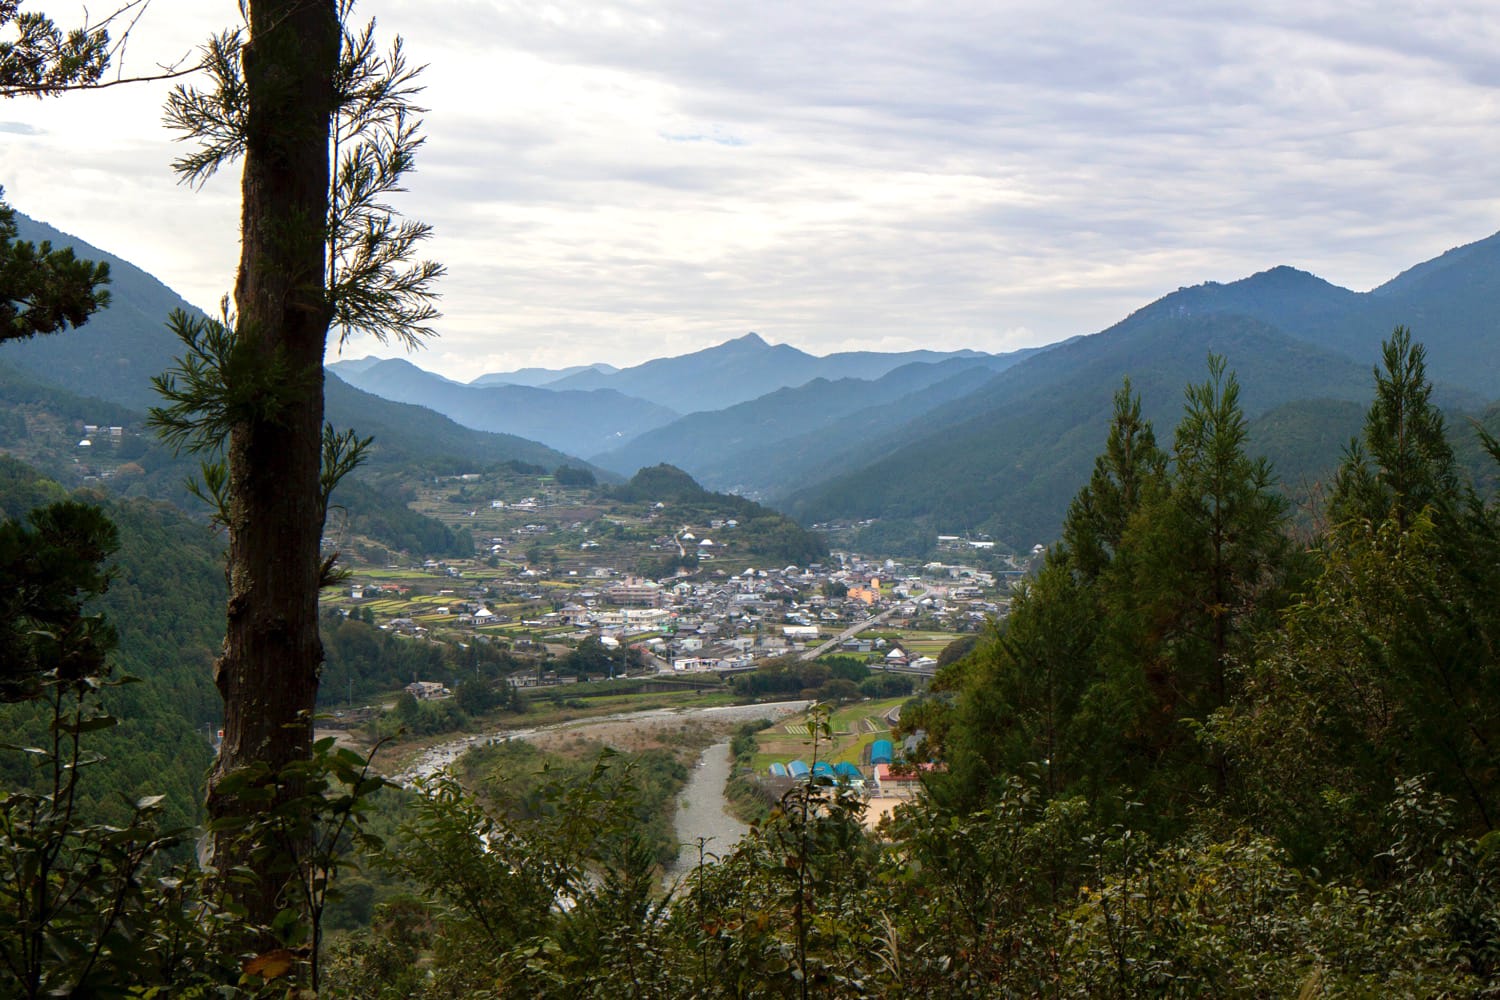 鮎喰川の両岸にせりあがるように家々が建つ、神山の風景。